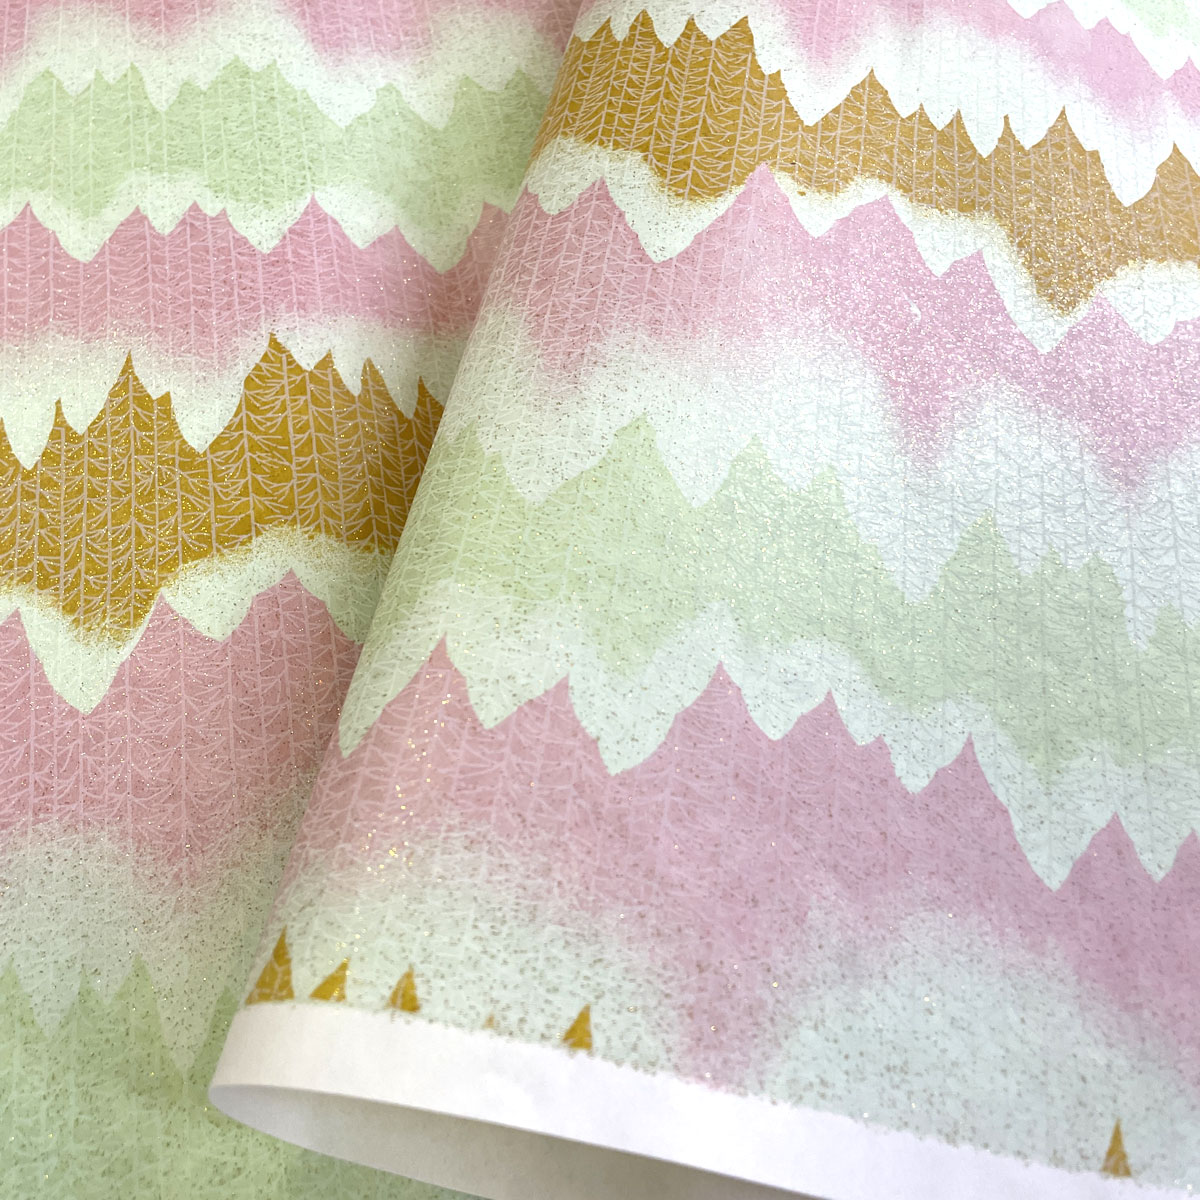  блестящий ... бумага ламе . светится лезвие пилы узор розовый .. зеленый чай цвет большой размер . штамп примерно 63x93cm цветная бумага 